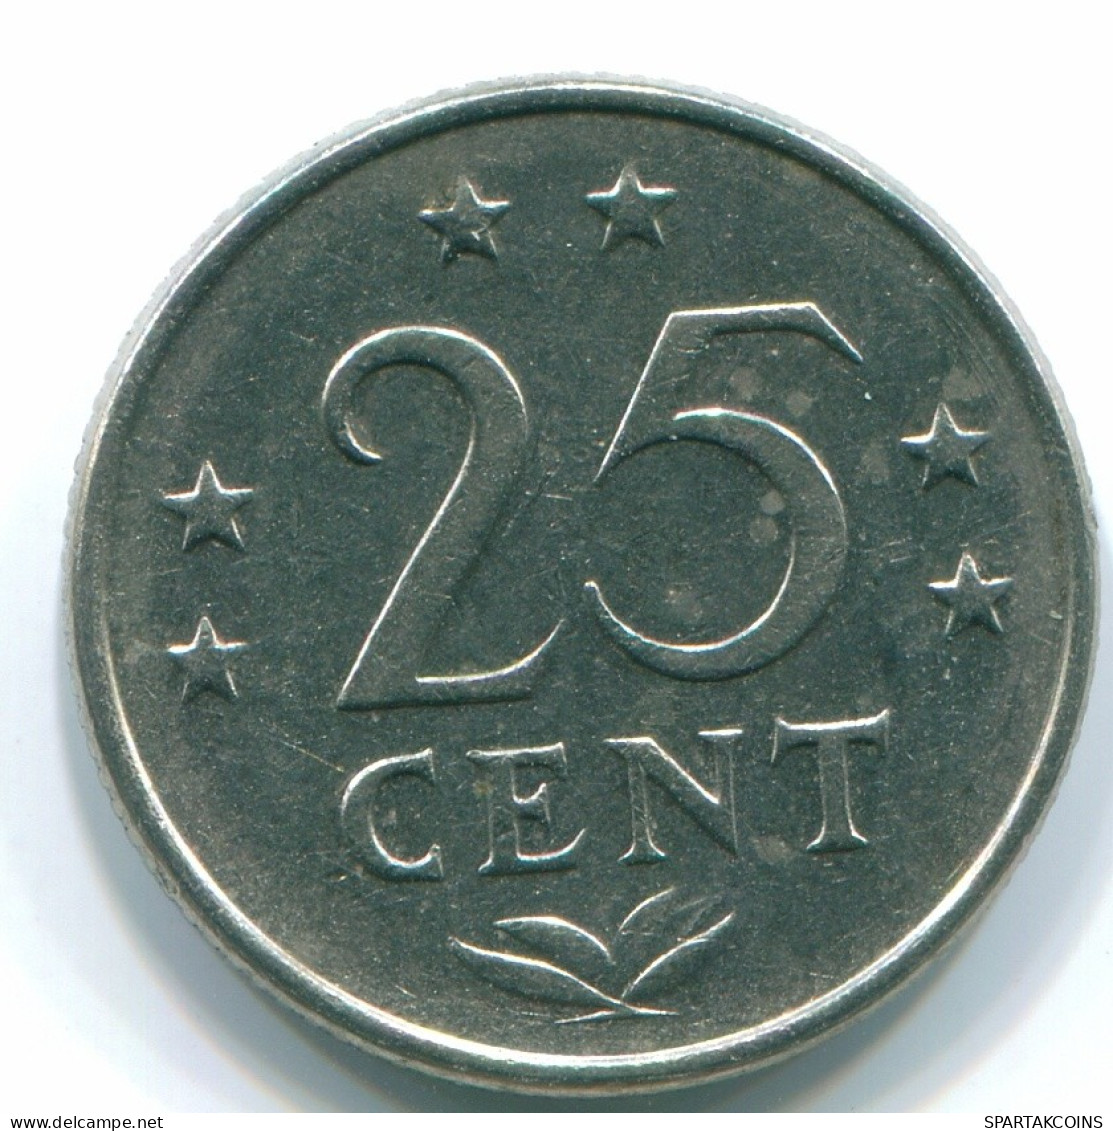 25 CENTS 1970 ANTILLAS NEERLANDESAS Nickel Colonial Moneda #S11444.E.A - Antilles Néerlandaises